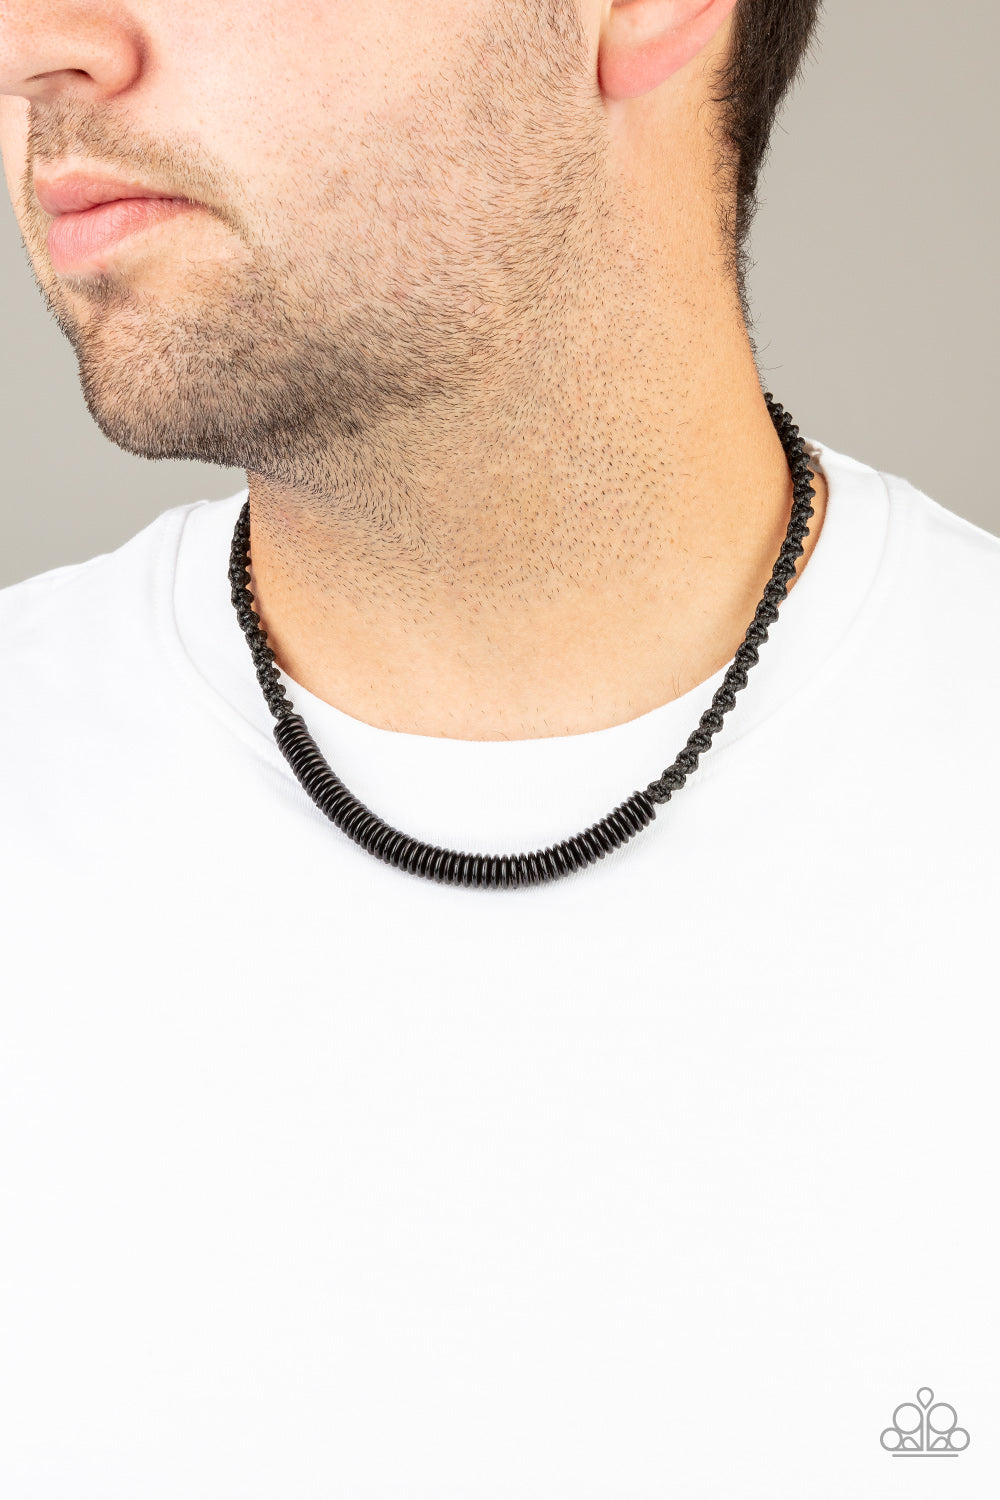 Paparazzi Accessories - Plainly Primal - Black Urban/Men Necklace